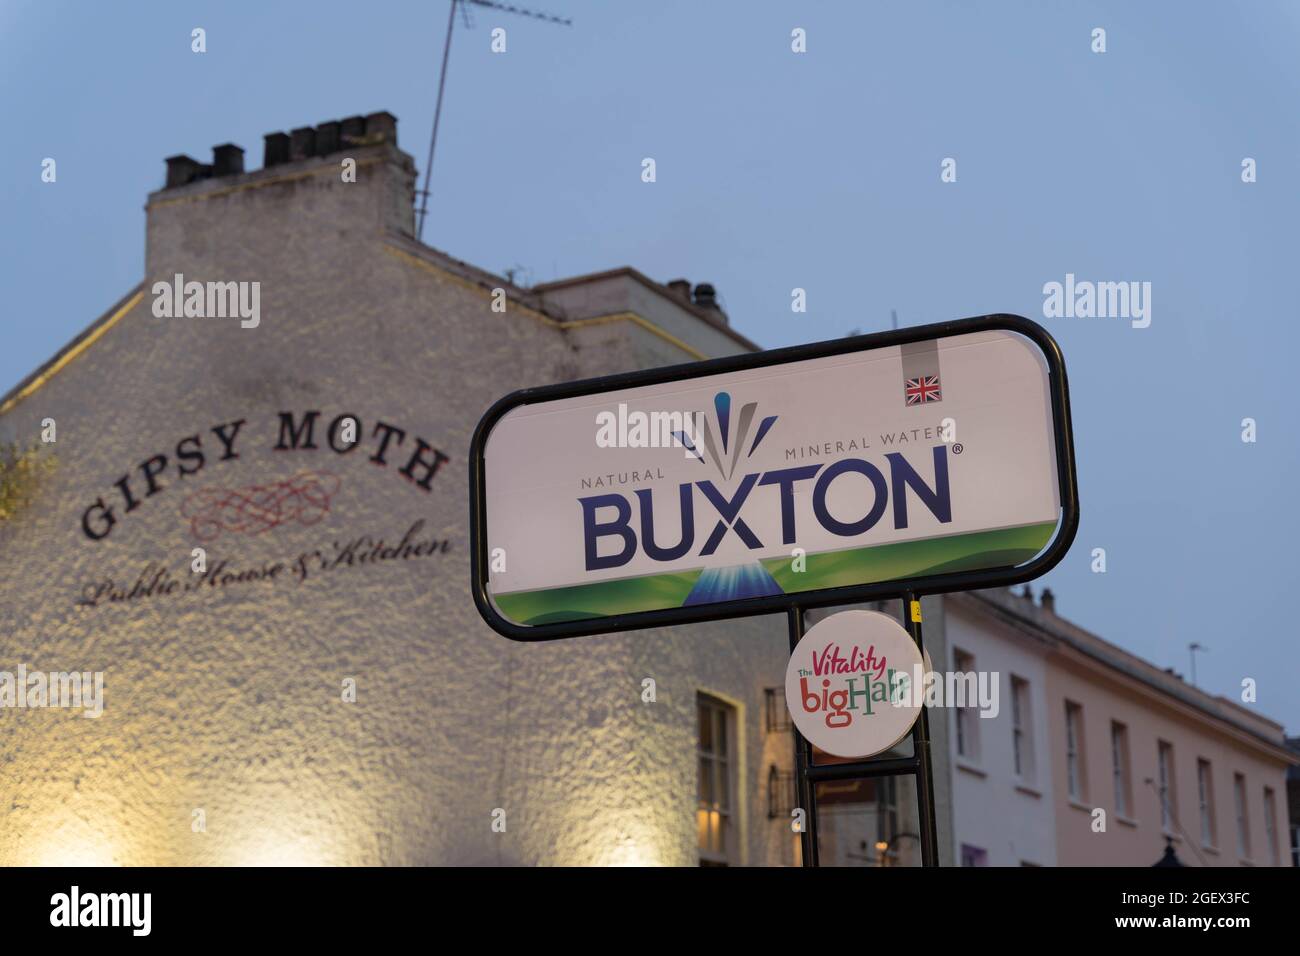 Buxton annonce à Big Half Marathon Cutty Sark, Londres Angleterre Royaume-Uni Banque D'Images